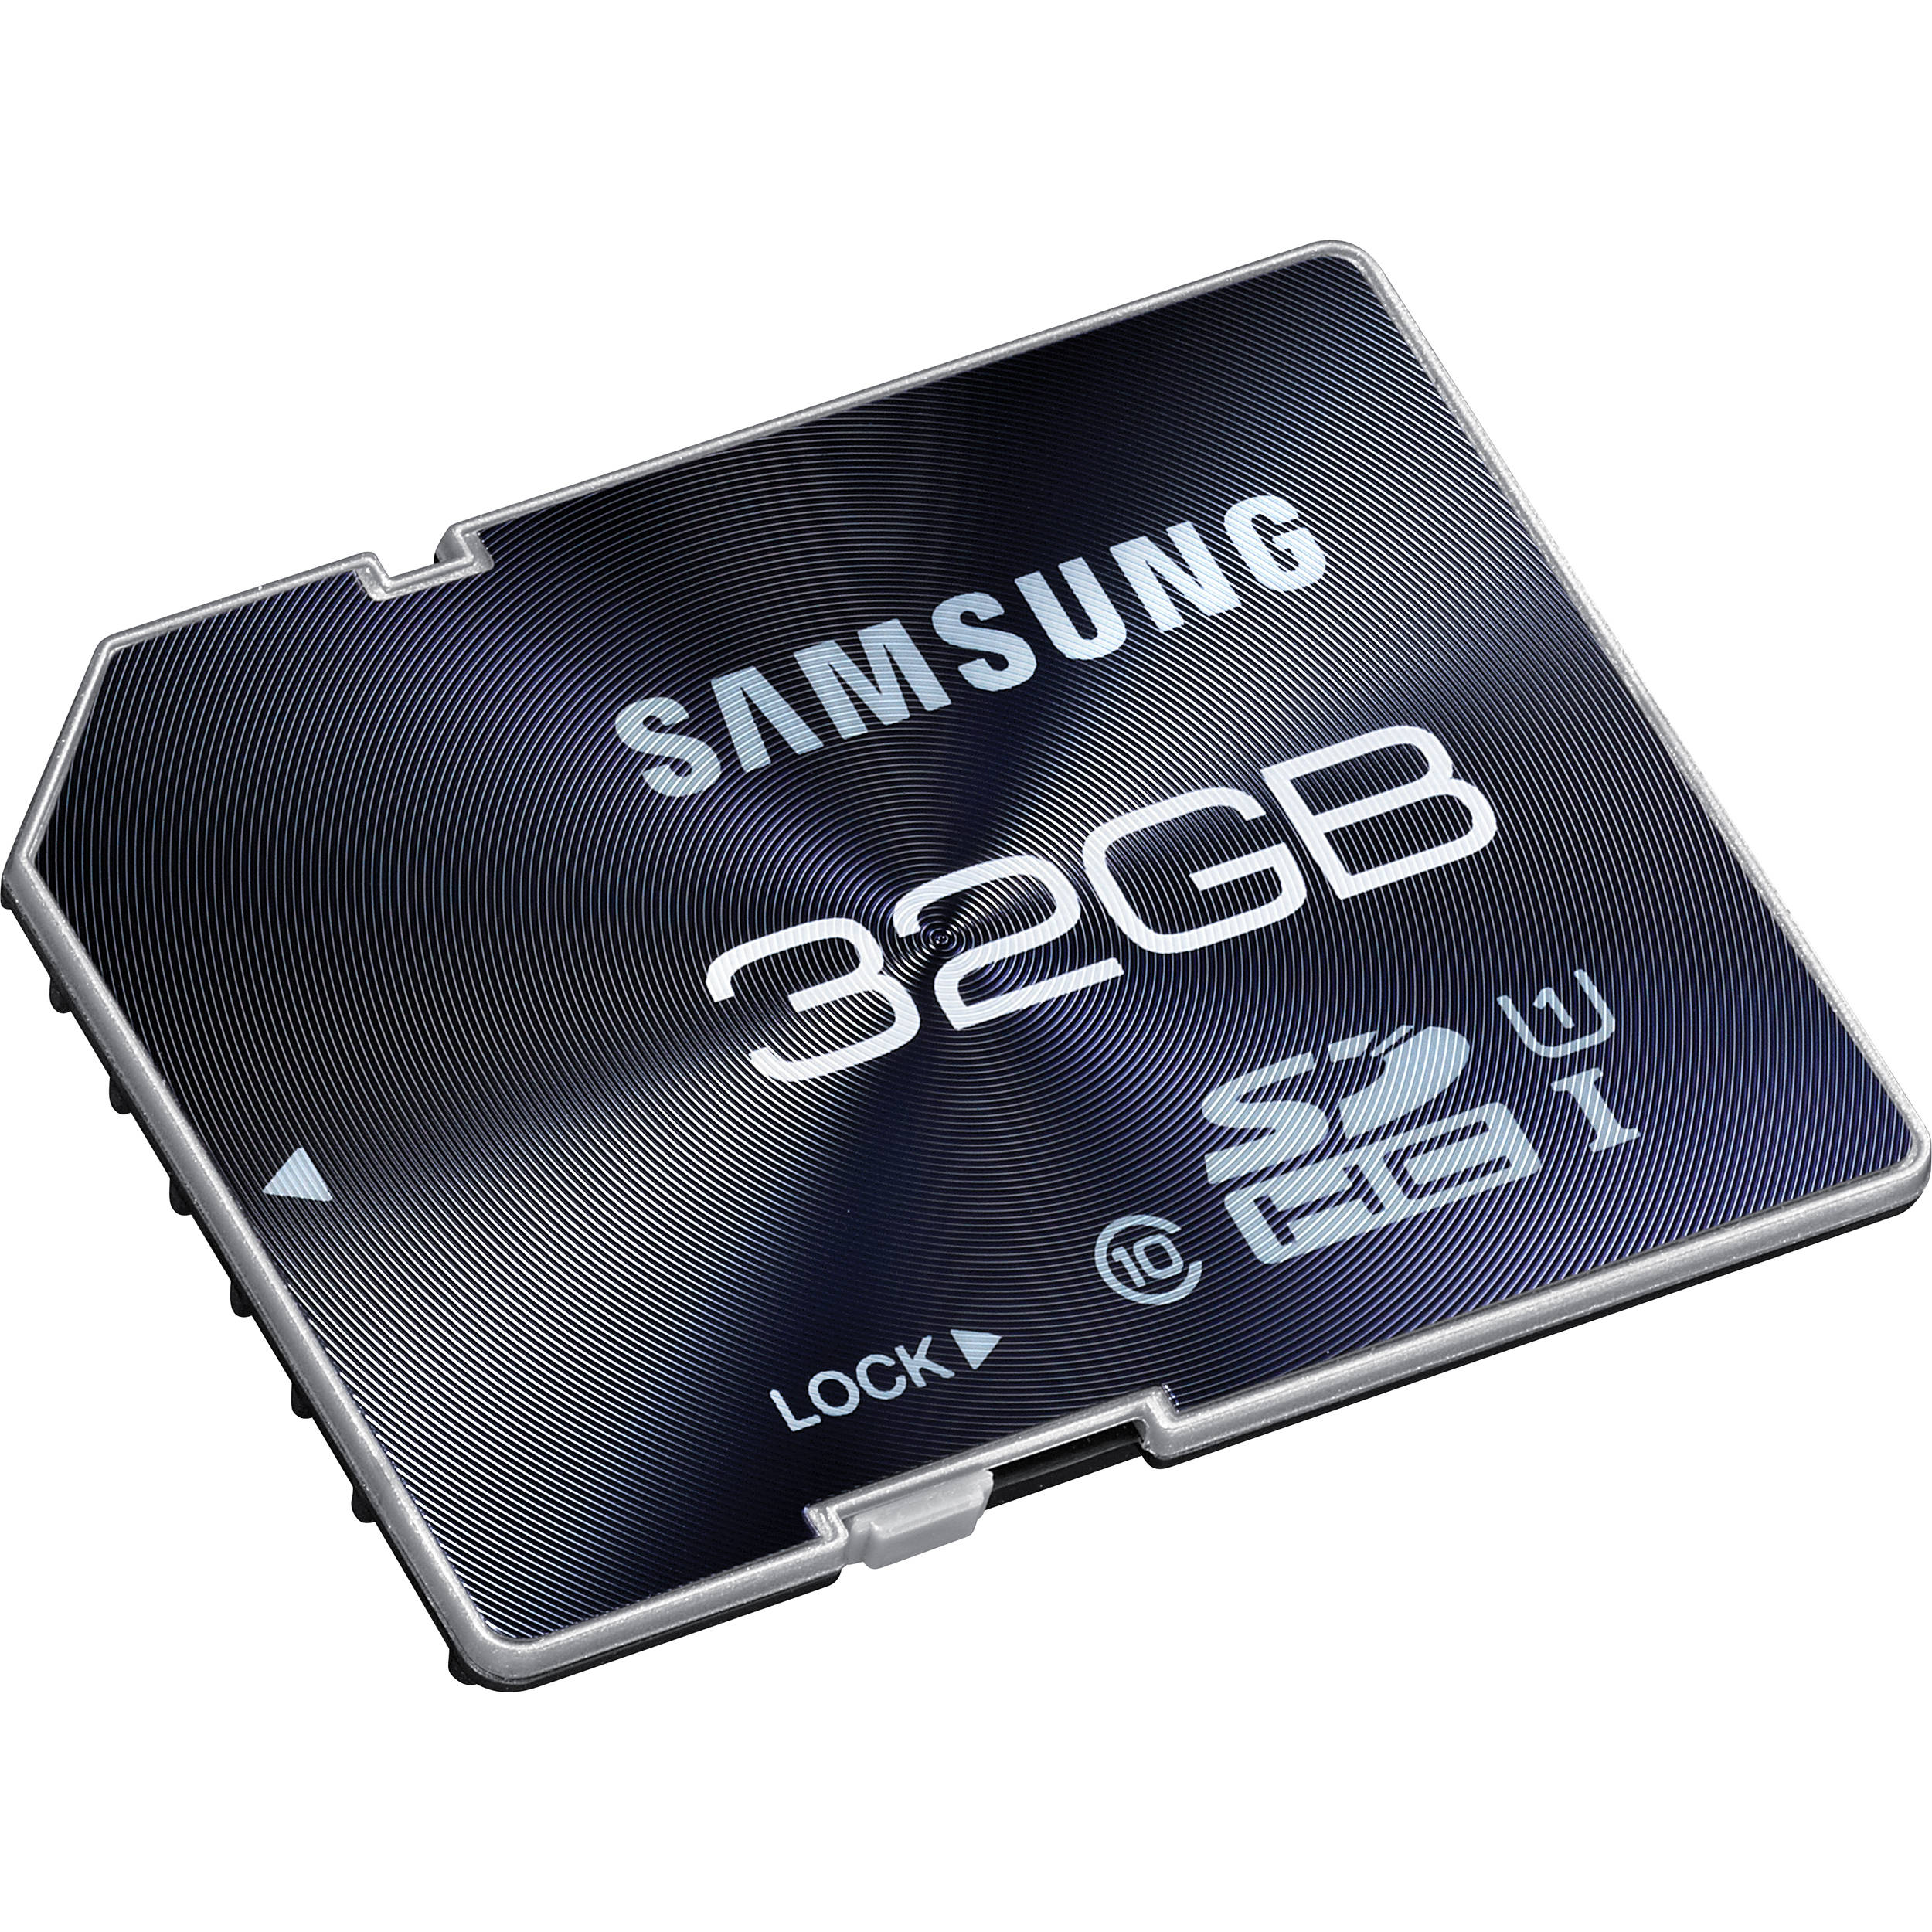 Флешка для телевизора самсунг. Samsung SD Card. SD Card 64 GB. СД карта 32 самсунг SDHC. Карта памяти 16 ГБ самсунг.